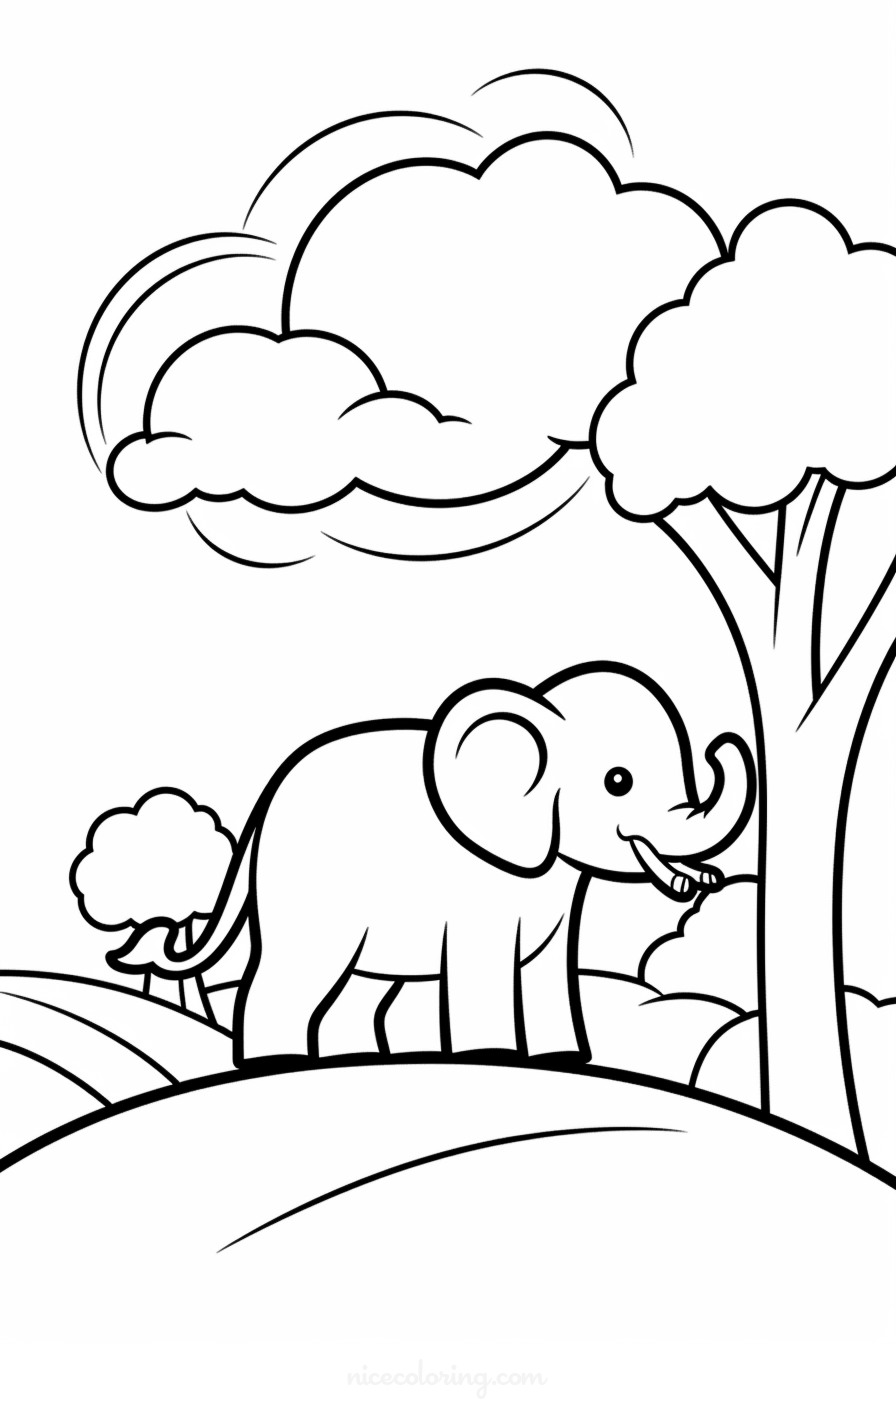 قدرتی منظر میں ہاتھی کا خاندان رنگ بھرنے کا صفحہ